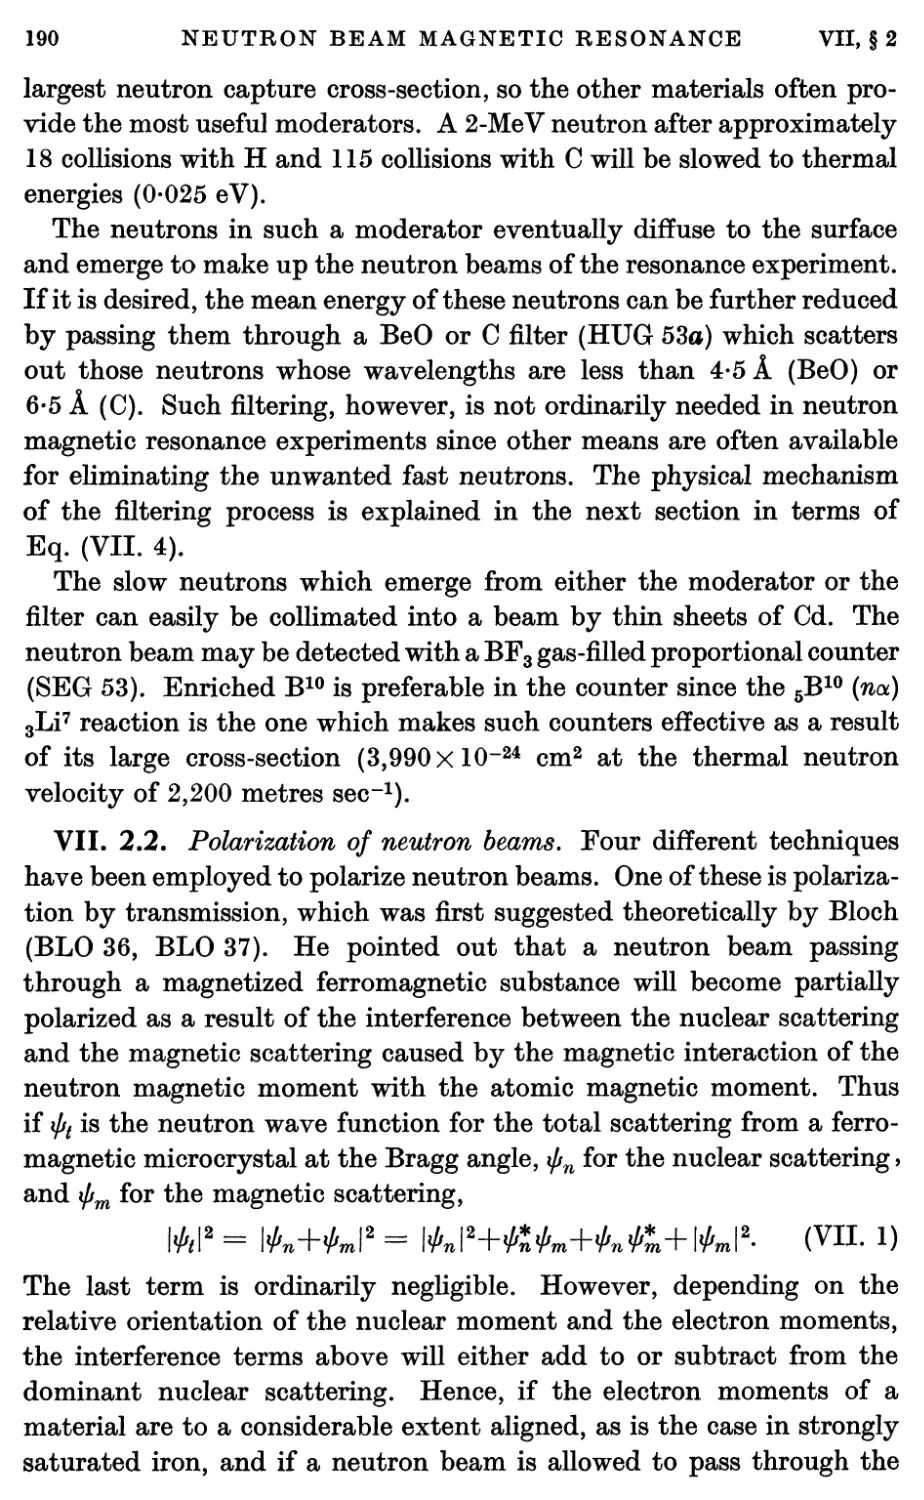 VII.2.2. Polarization of neutron beams